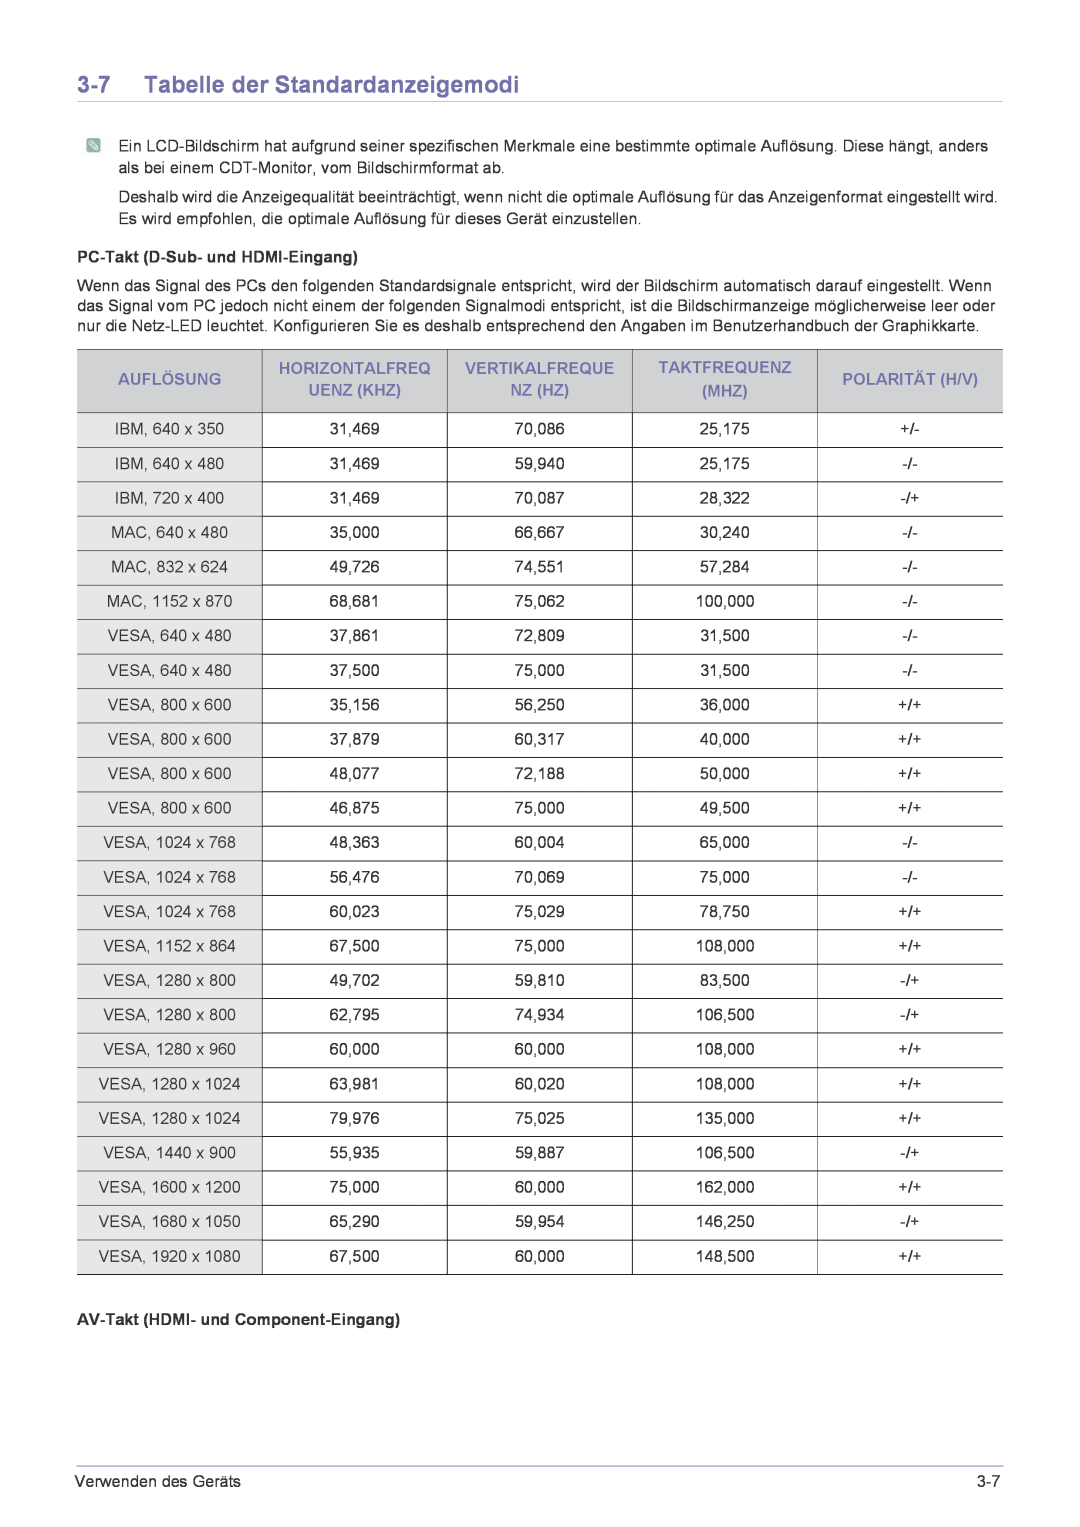 Samsung LS24EMLKF/EN Tabelle der Standardanzeigemodi, Auflösung, Horizontalfreq, Vertikalfreque, Taktfrequenz, Uenz Khz 